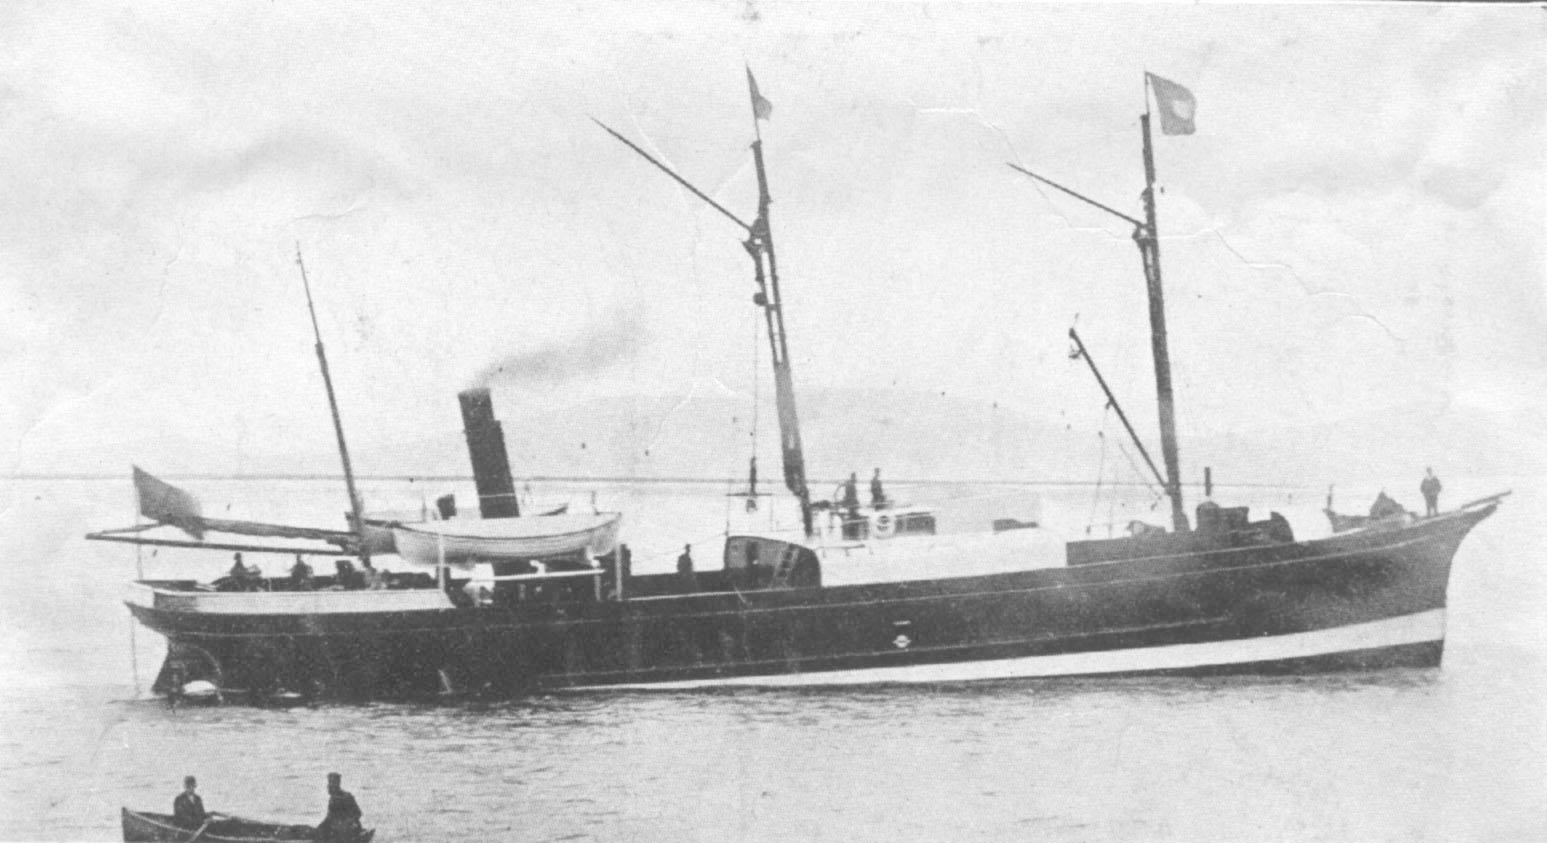 1862 general cargo vessel under way.